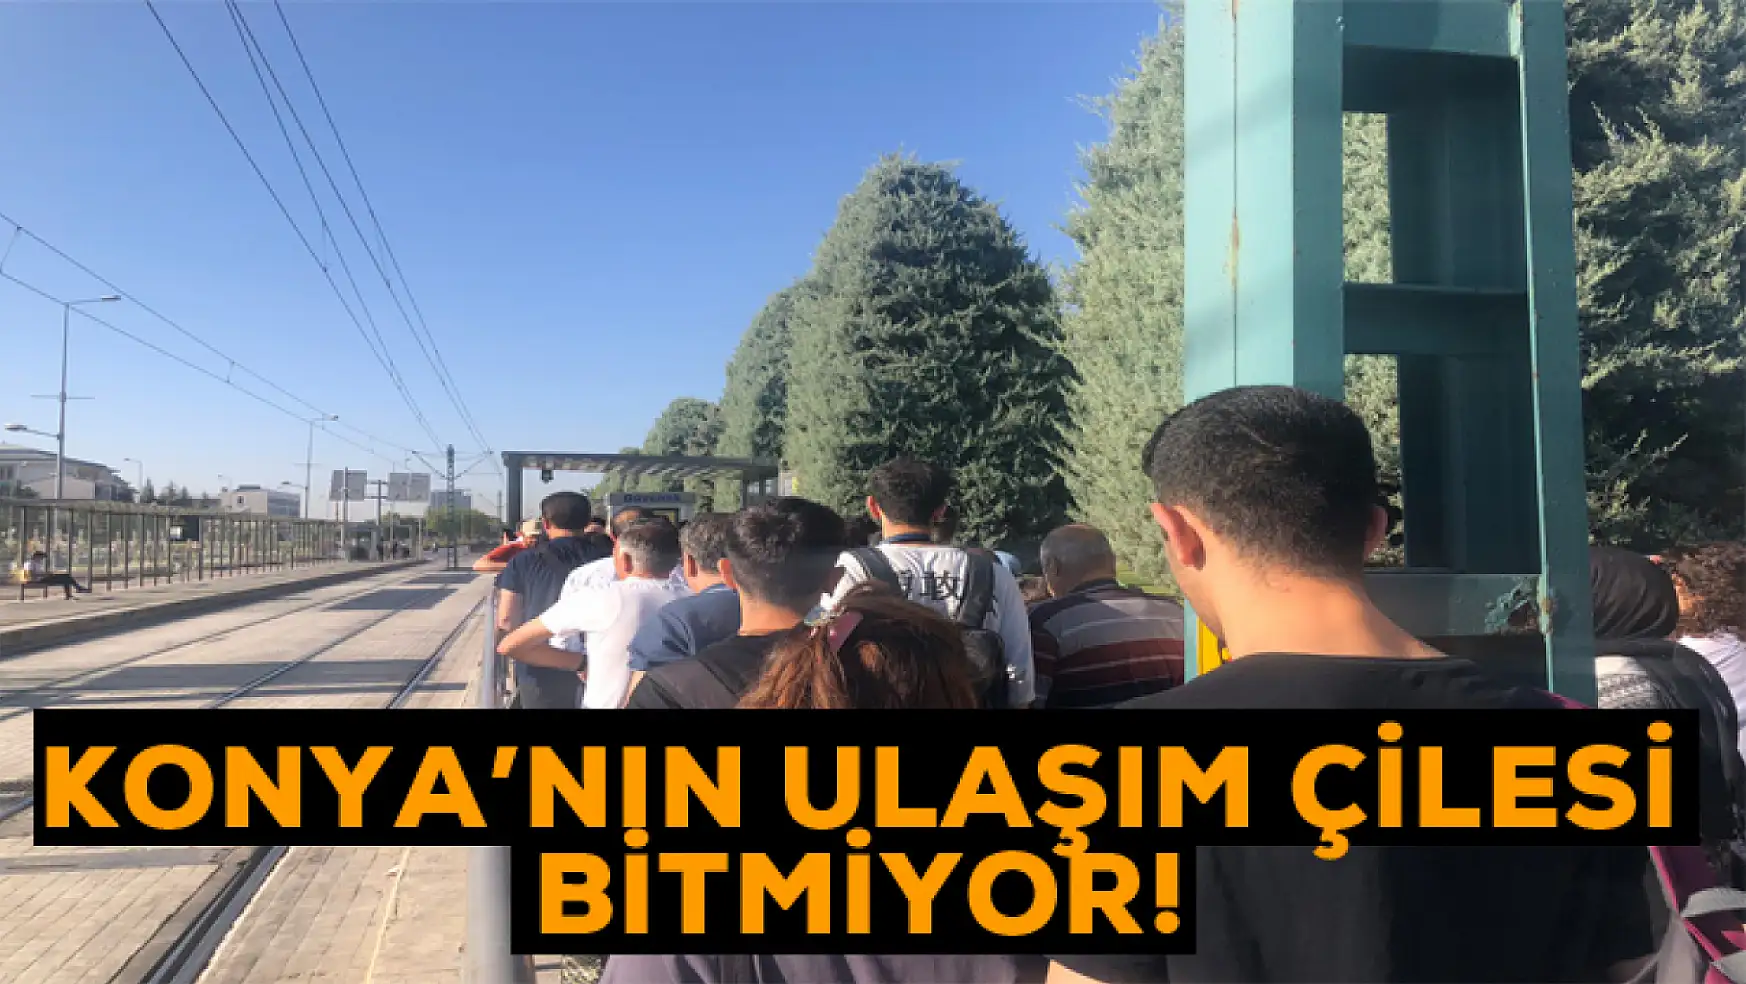 Konya'da vatandaşların ulaşım çilesi bitmiyor!